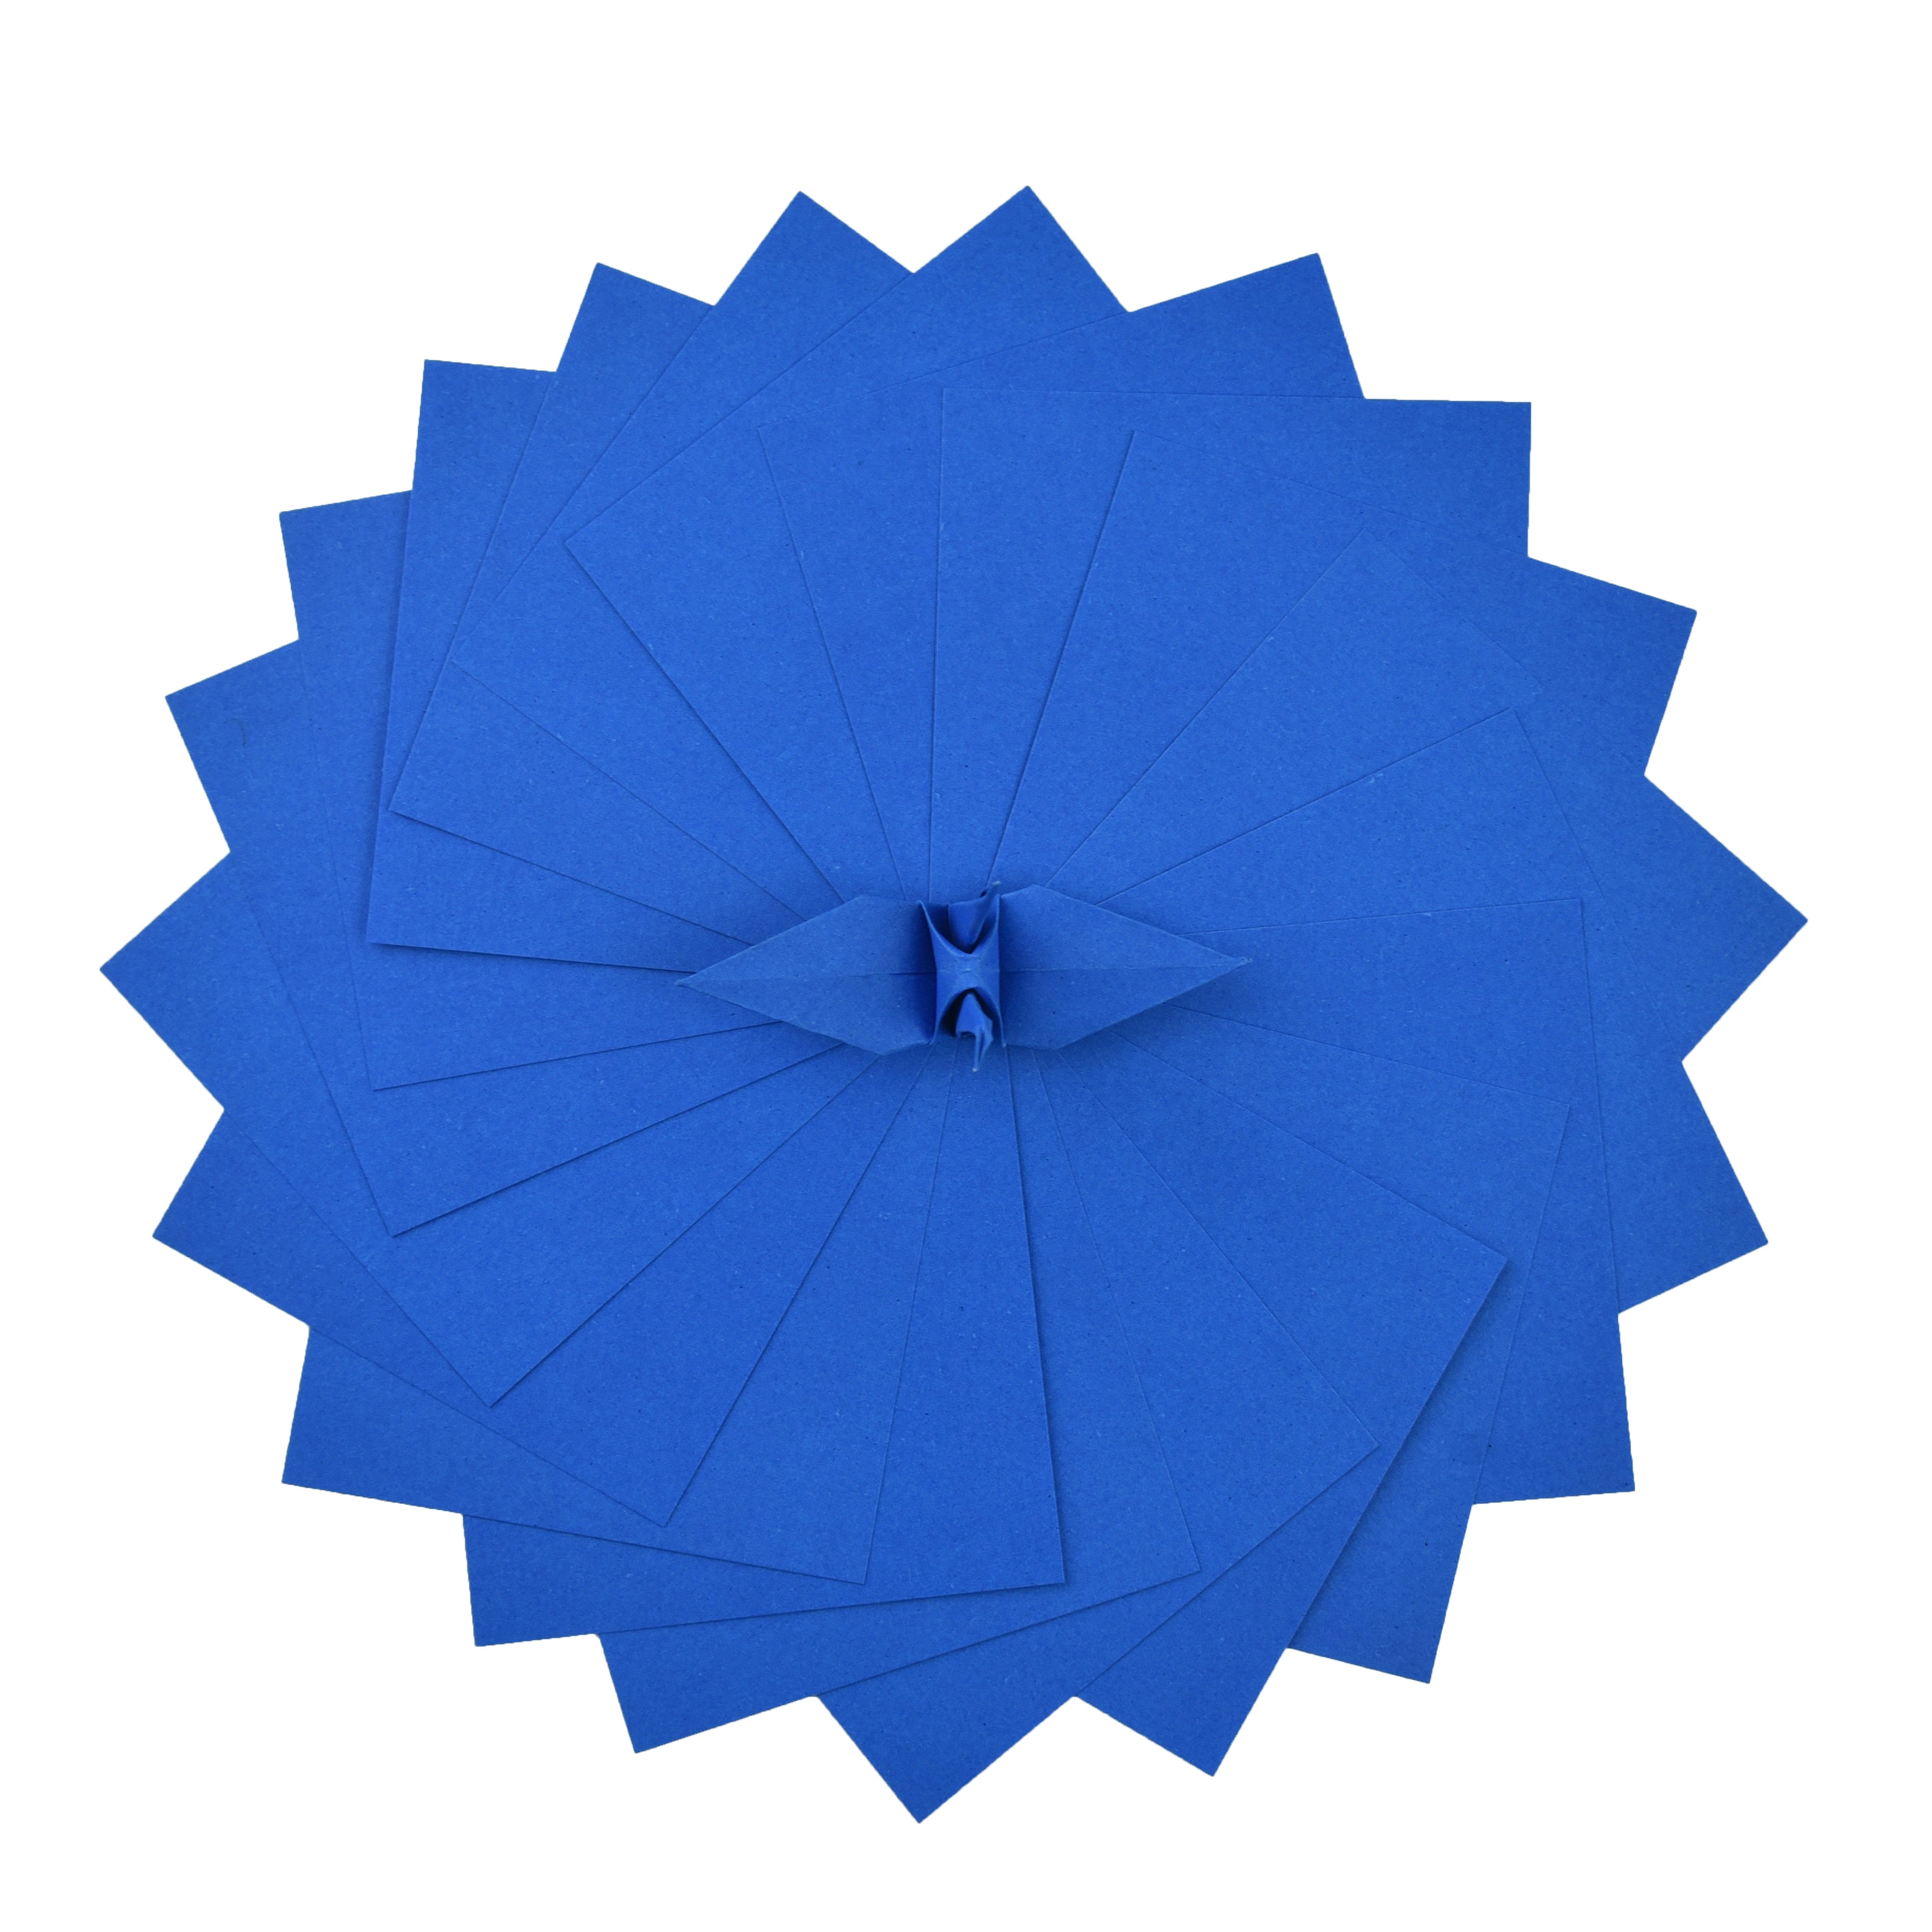 100 Hojas de Papel Origami - 6x6 pulgadas - Paquete de Papel Cuadrado para Plegar, Grullas de Origami y Decoración - S19